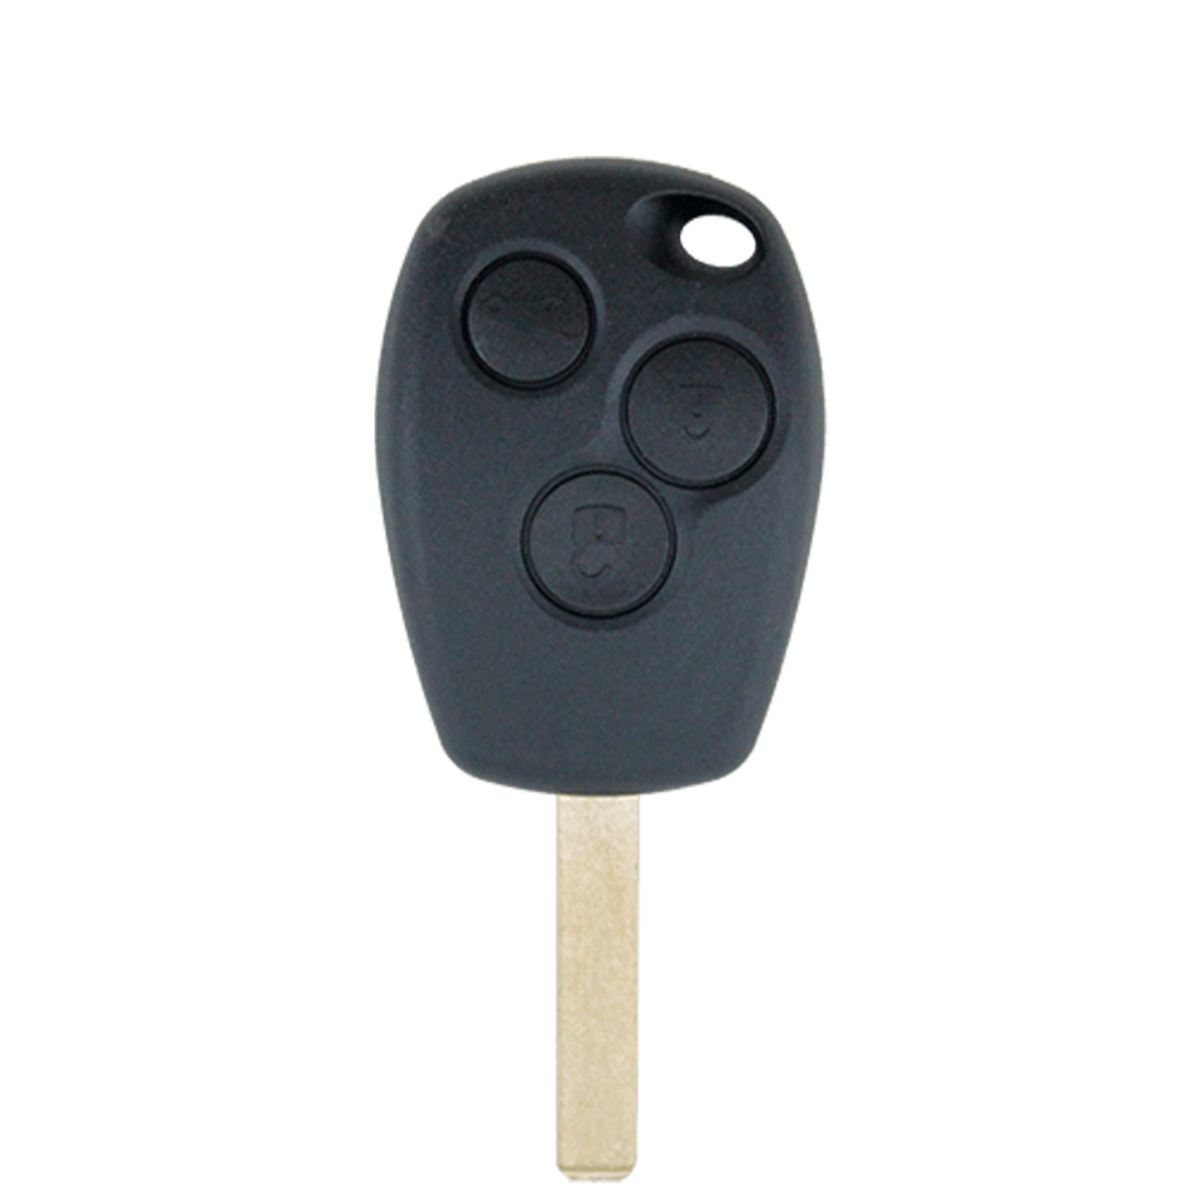 Mitsubishi compatible 3 button remote 434MHz